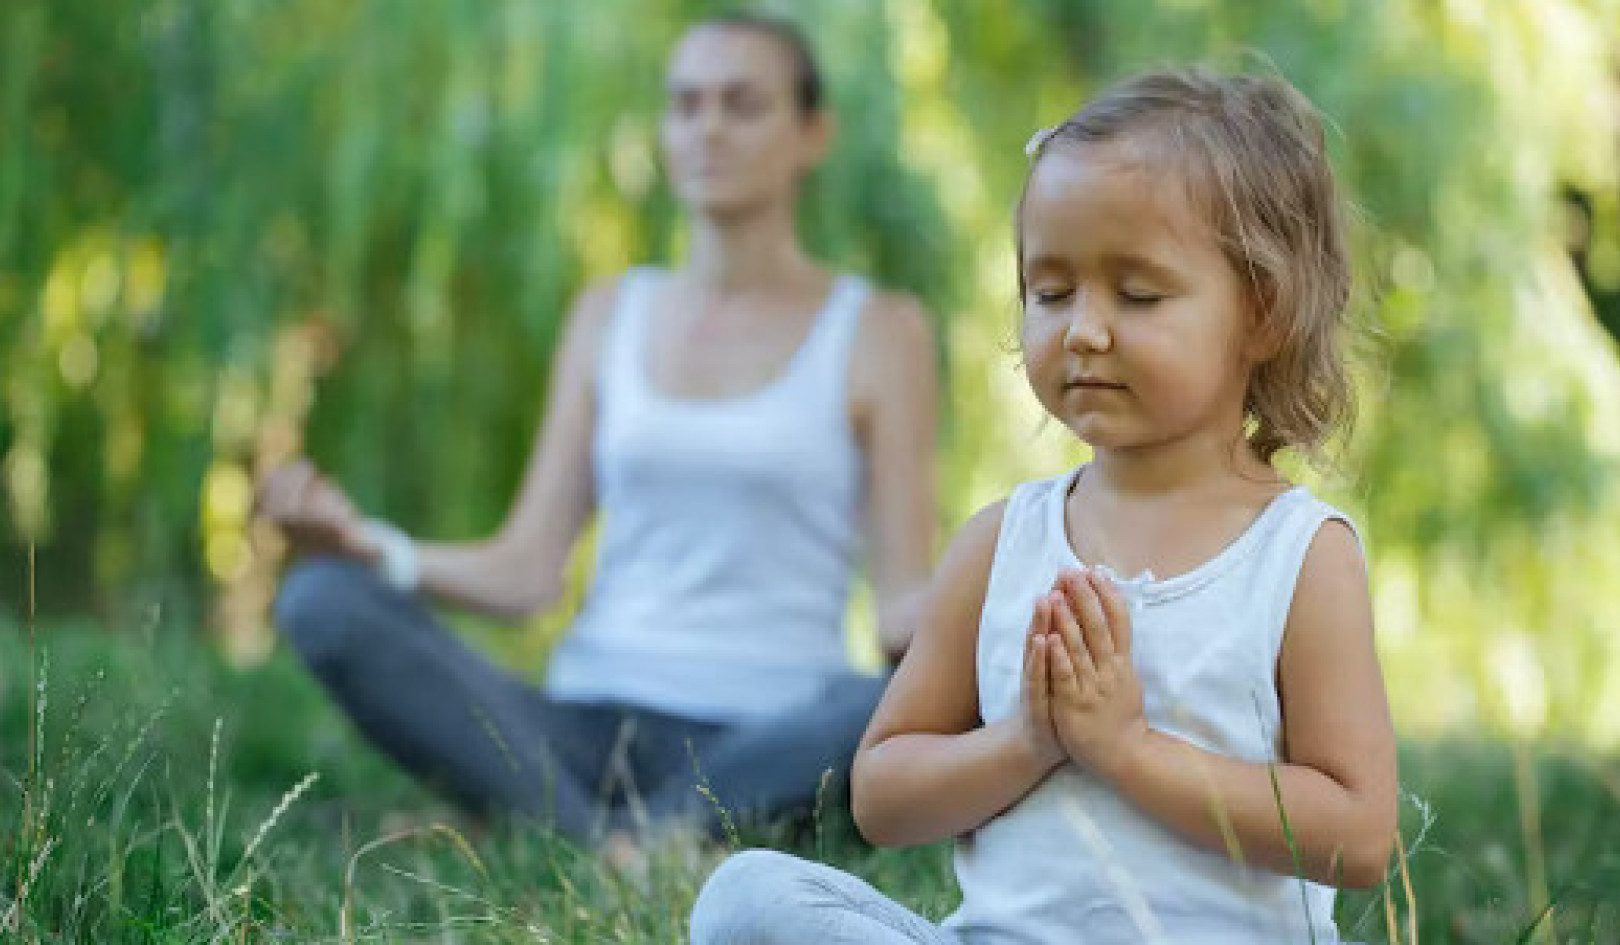 La méditation a le potentiel de traiter les enfants souffrant de traumatismes, de diagnostics difficiles ou de stress